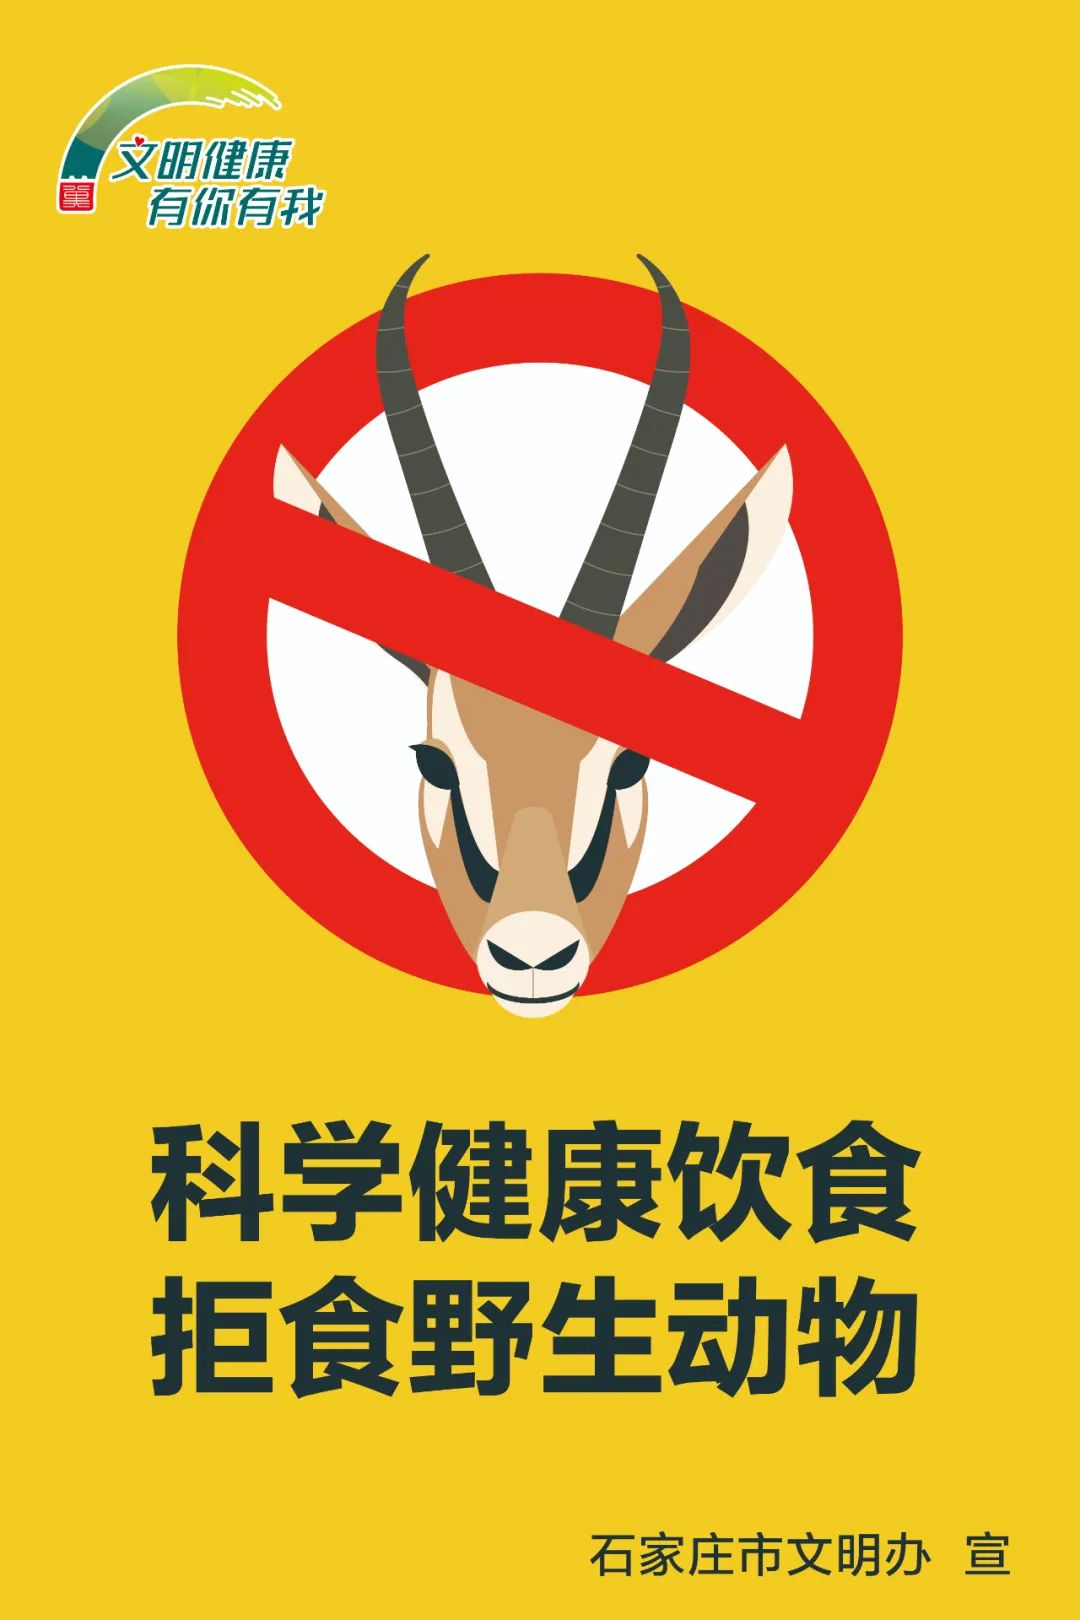 【公益广告】拒食野生动物